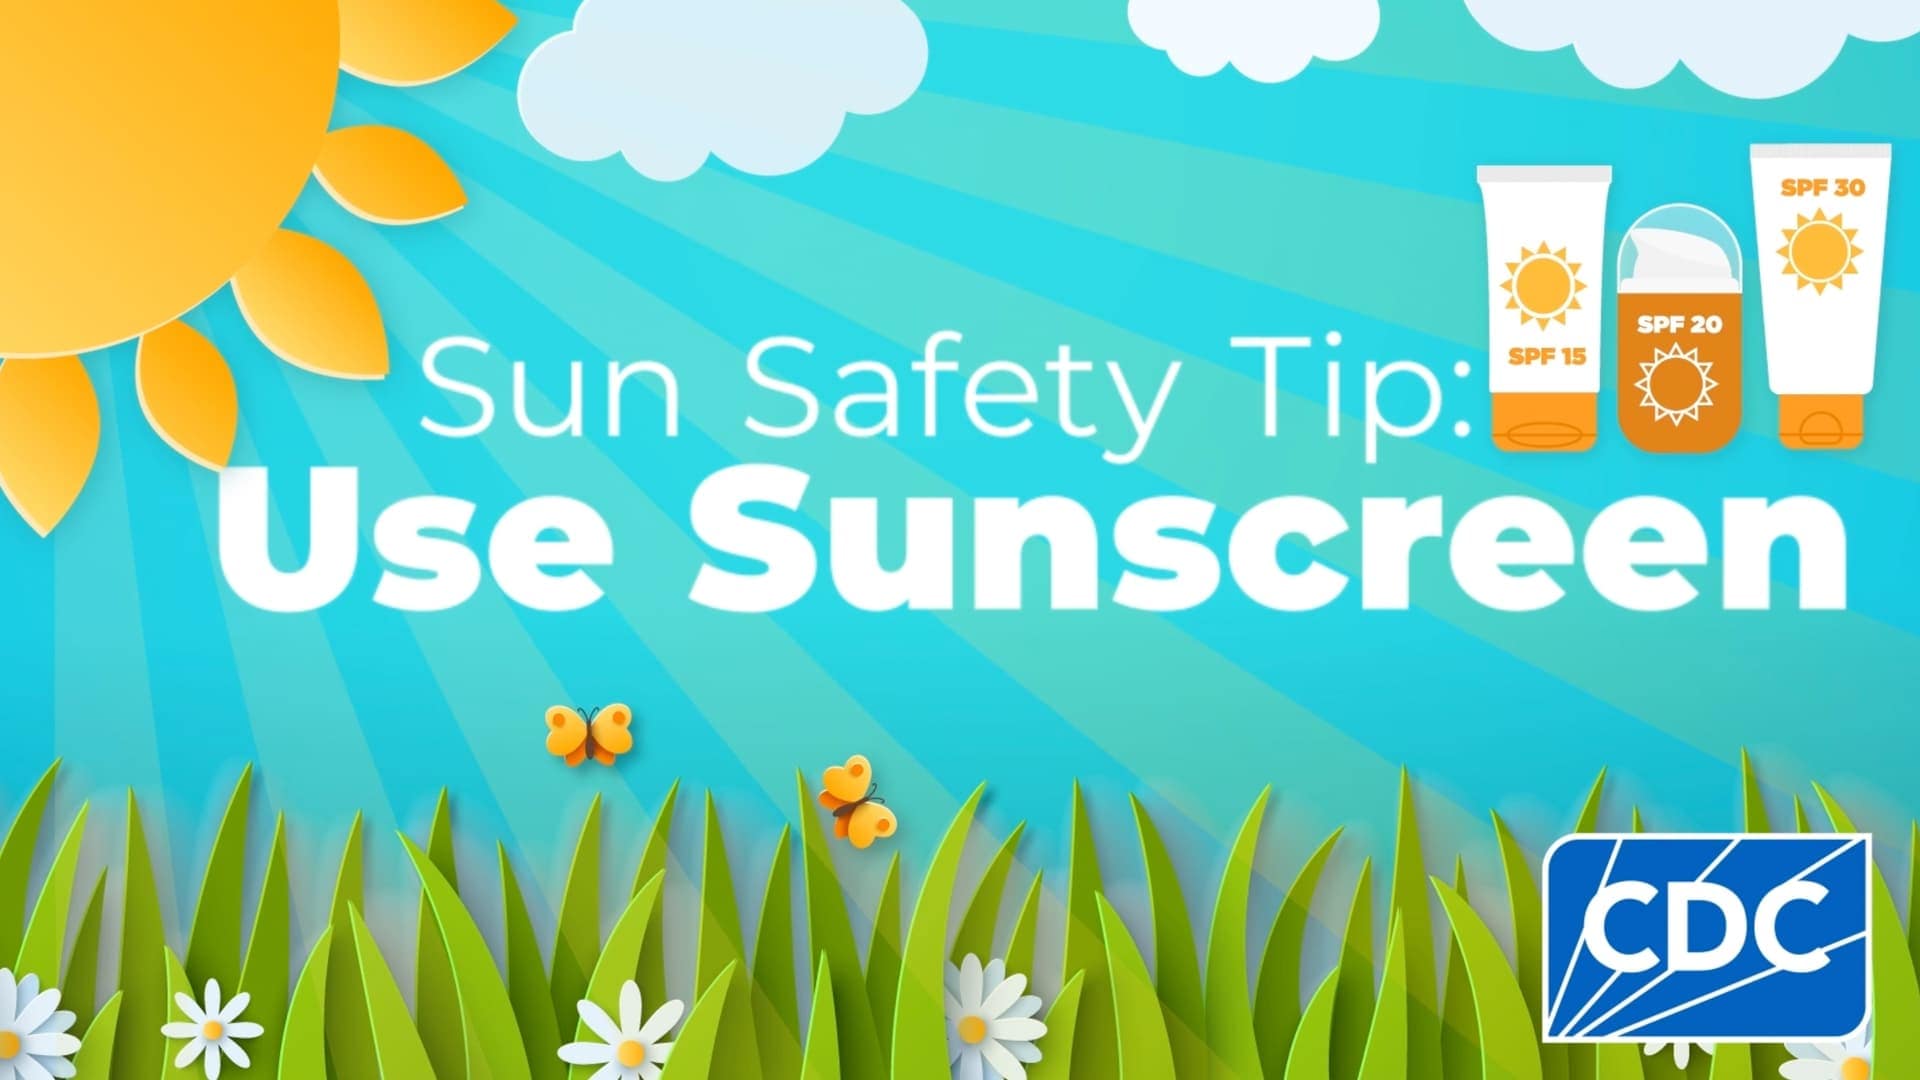 Sun Safety Tip: Use Sunscreen